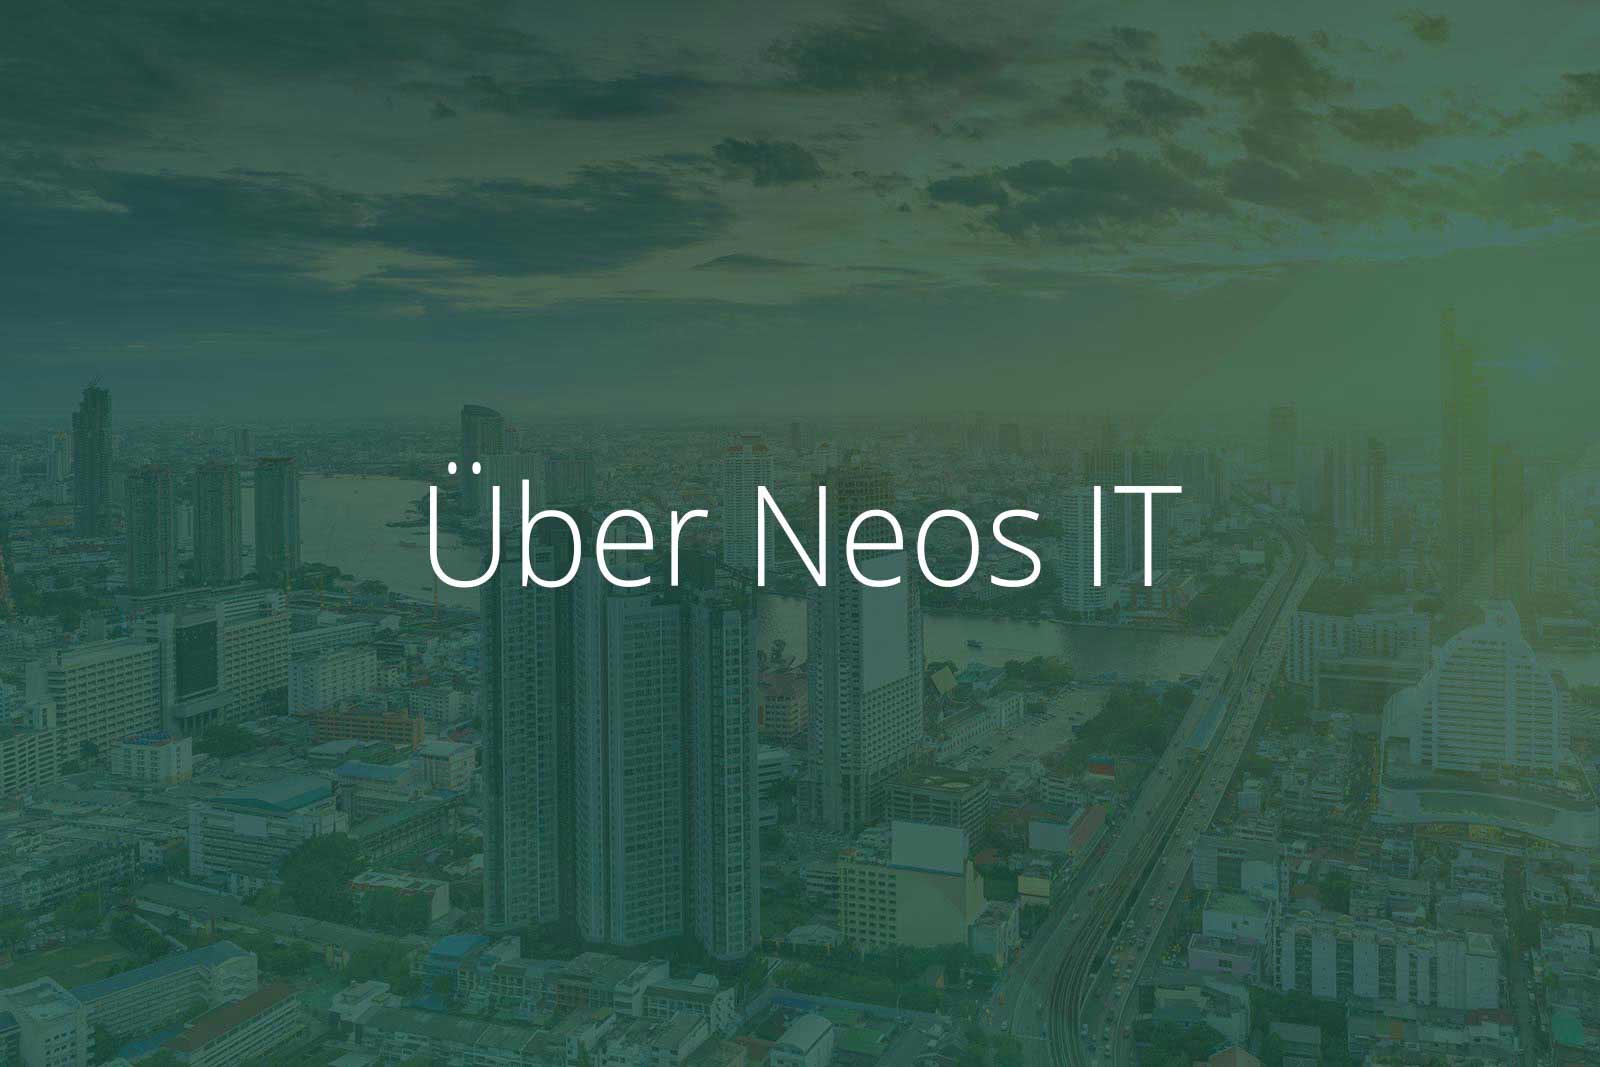 Über Neos IT Services, Abbildung Bangkok